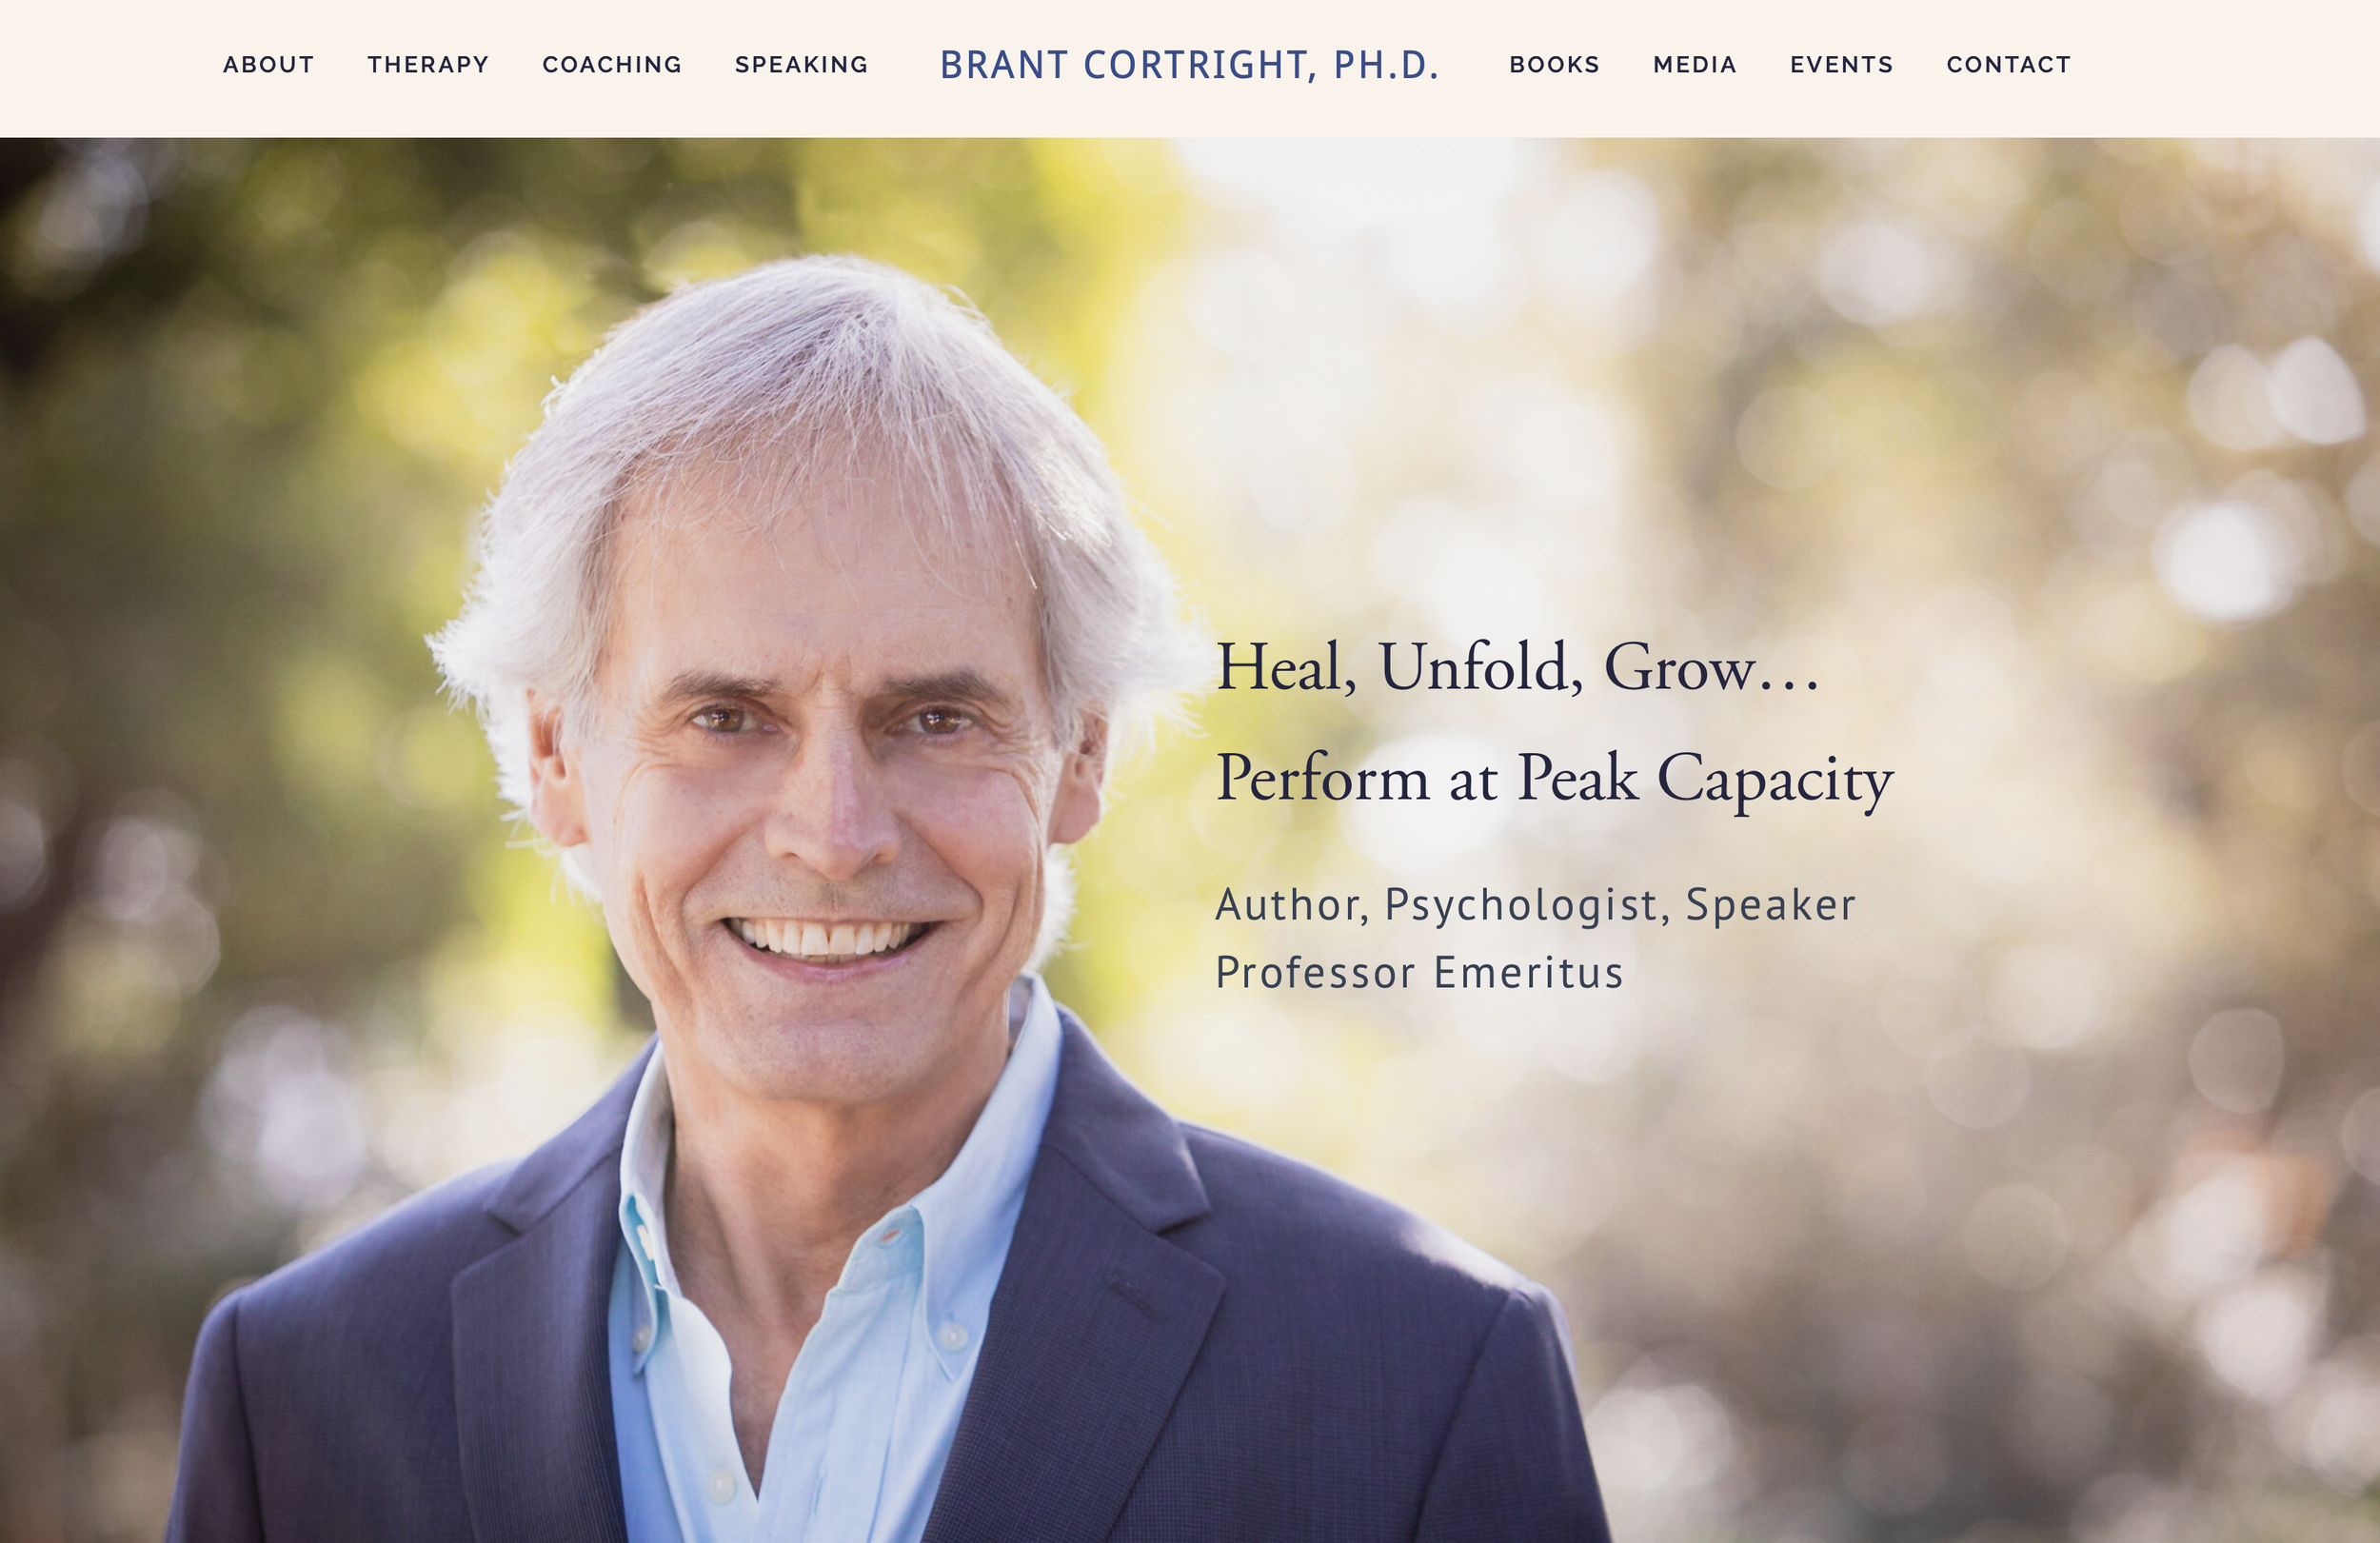 Brant Cortright, PH.D., Author, Psychologist, Speaker &amp; Professor Emeritus